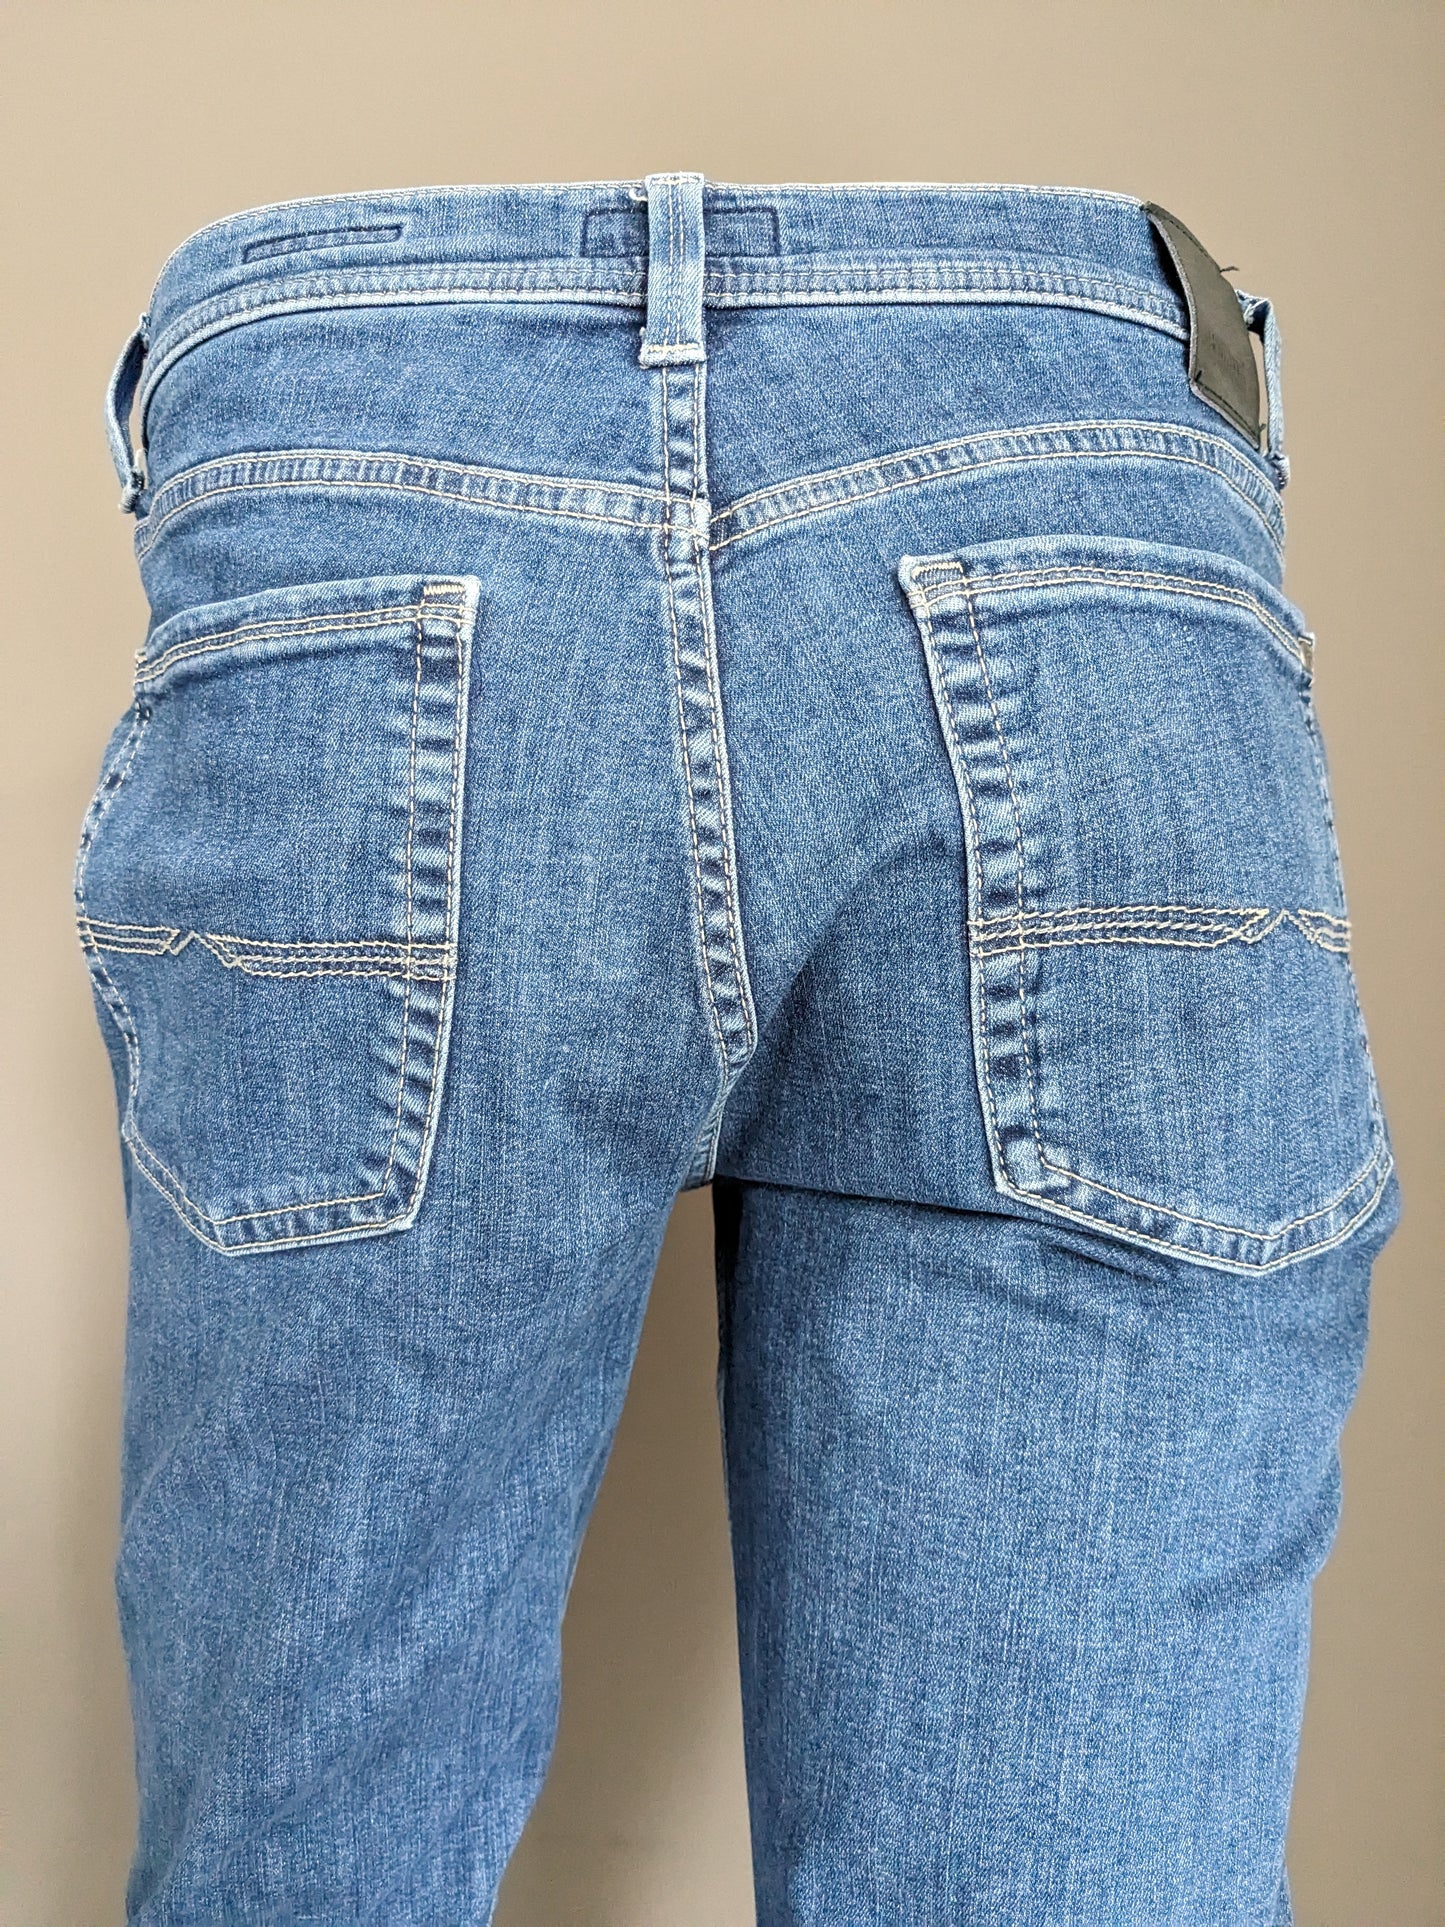 Jeans pionniers. Couleur bleue. Taille W33 - L30. Mega Flex. Tapez Rando. extensible.